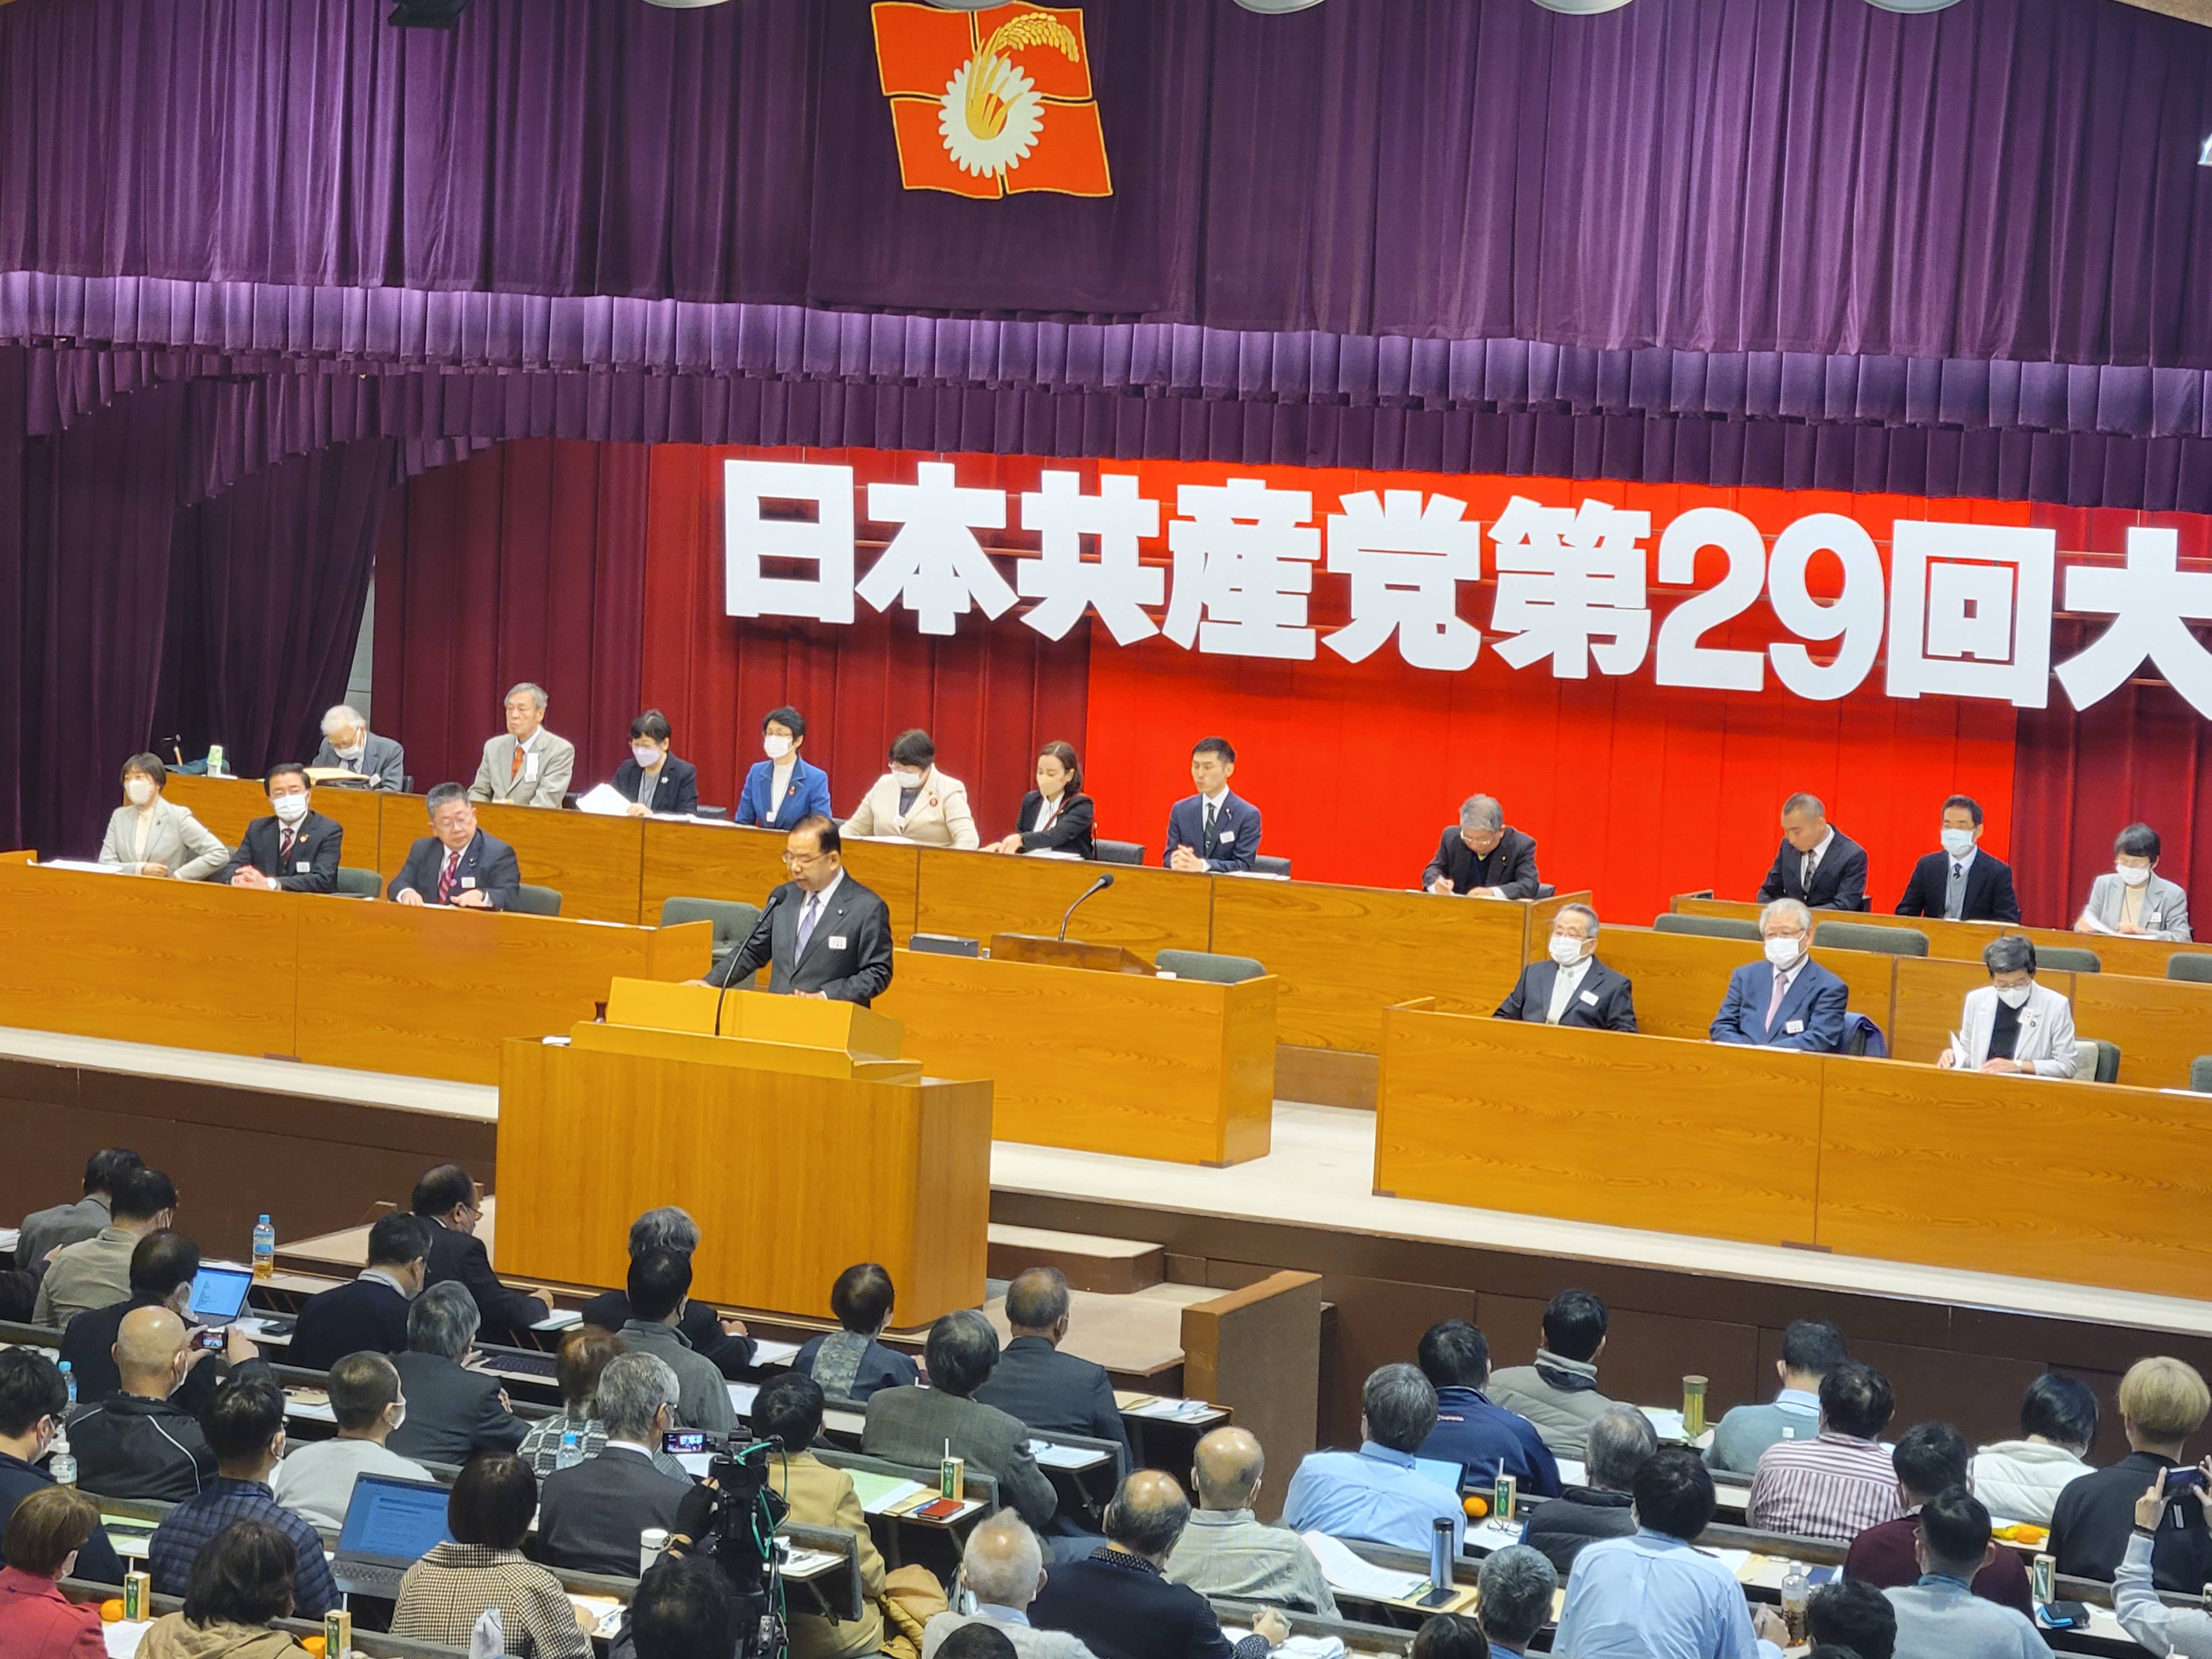 Le 29ᵉ congrès du Parti communiste japonais s'est ouvert